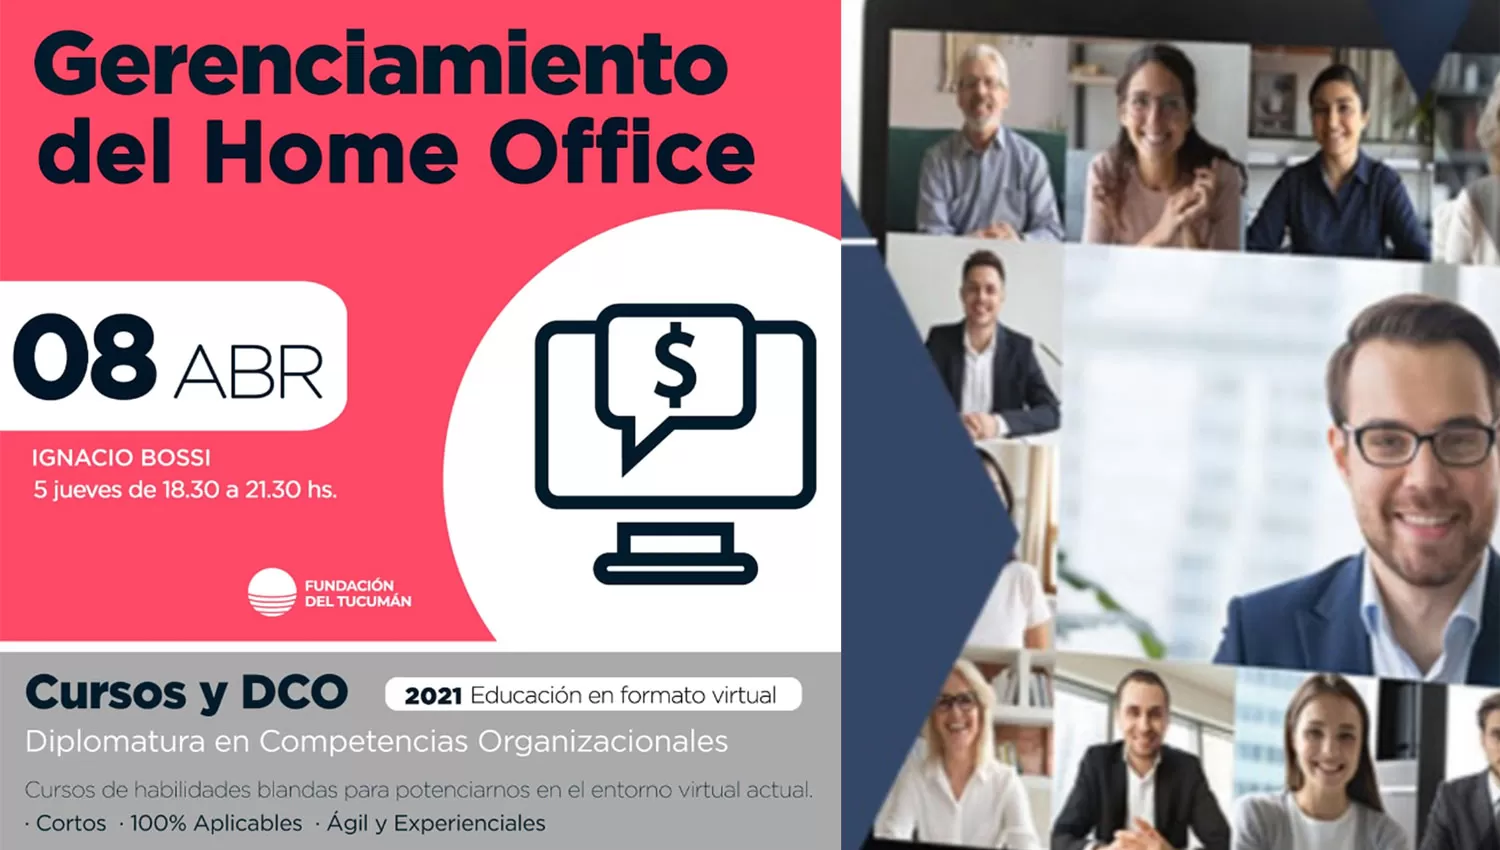 Capacitate en Gerenciamiento del Home Office, con la Fundación del Tucumán